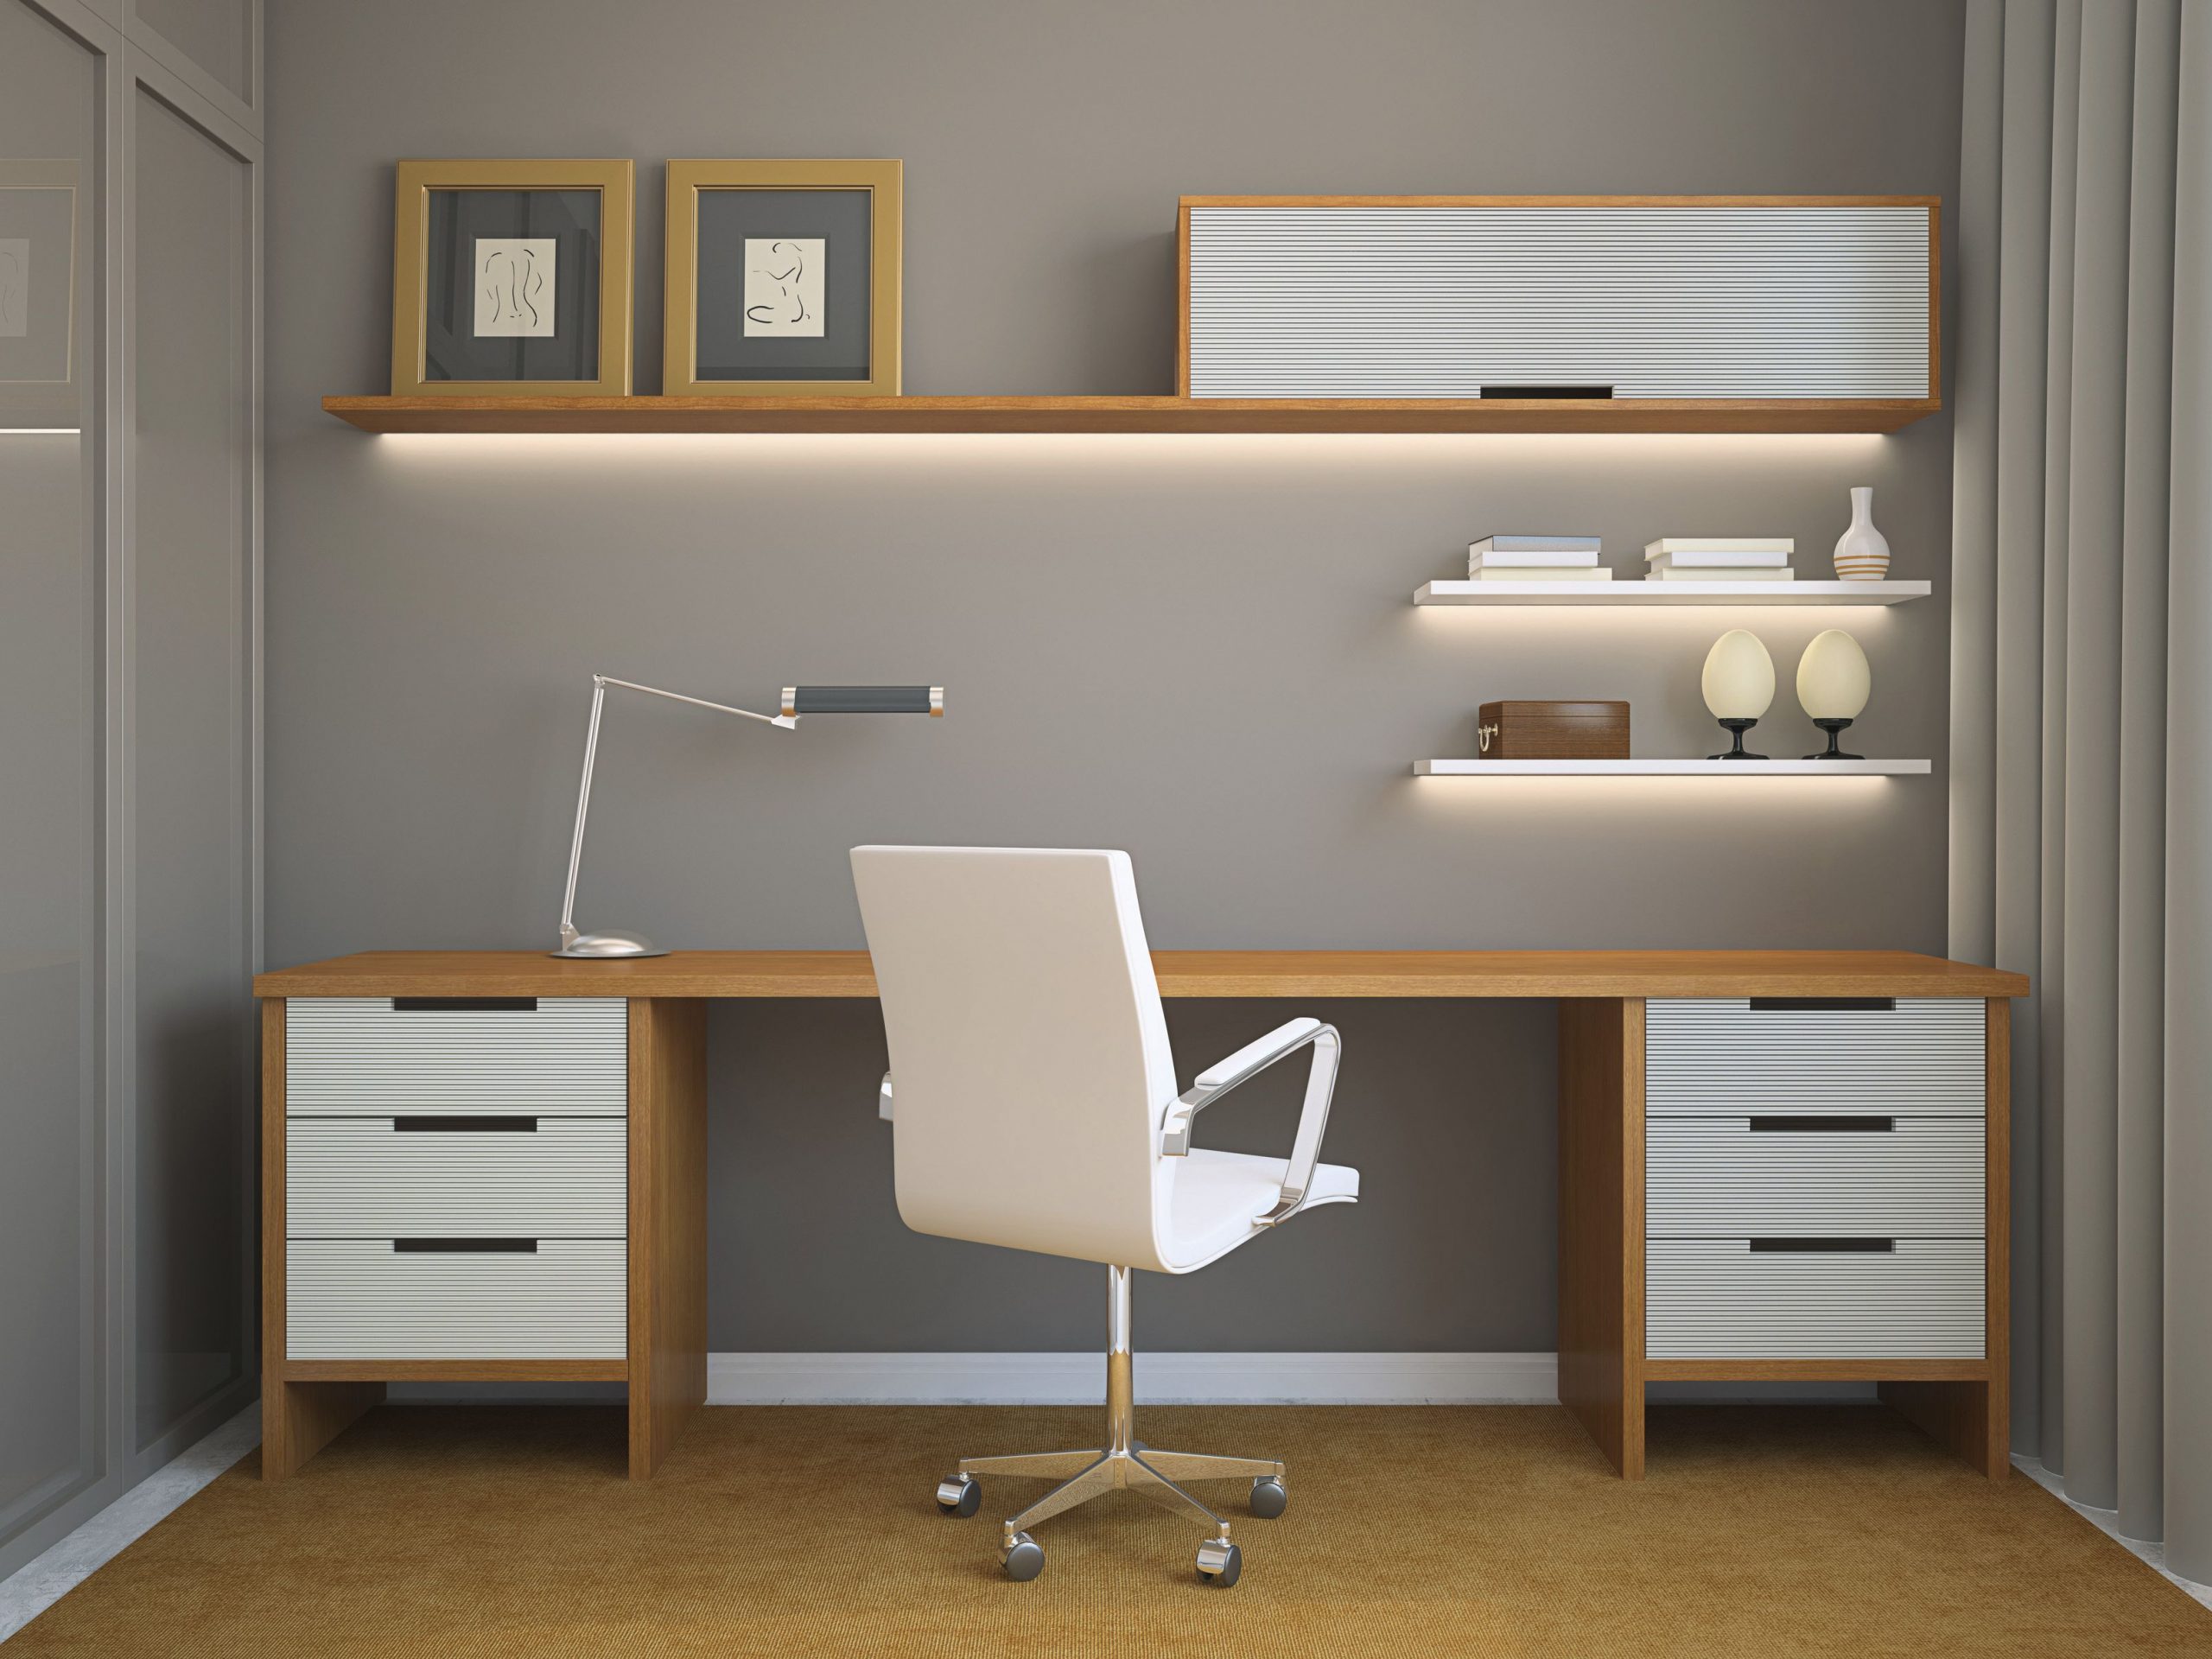  Jual  Meja  Kantor  Minimalis HPL Terbaru Sobat Furniture